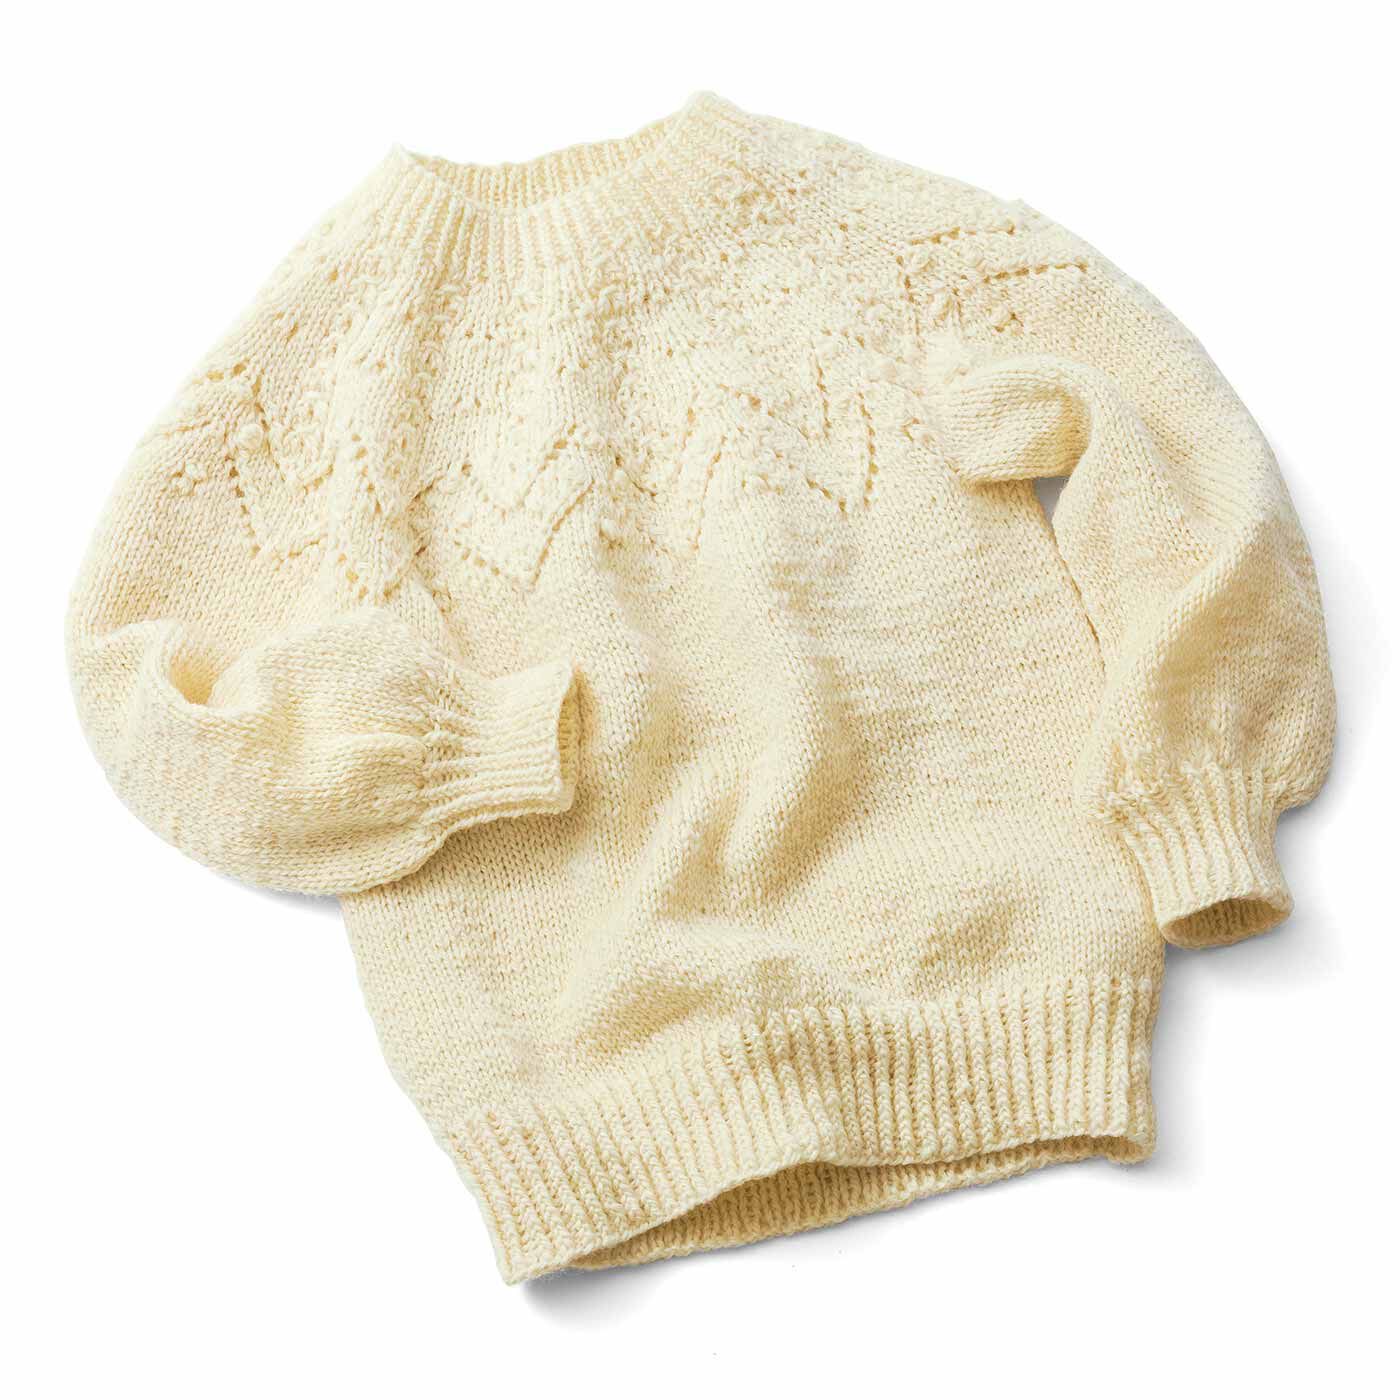 Couturier|今こそチャレンジ 輪針で編める 手編みのセーター〈キナリ〉